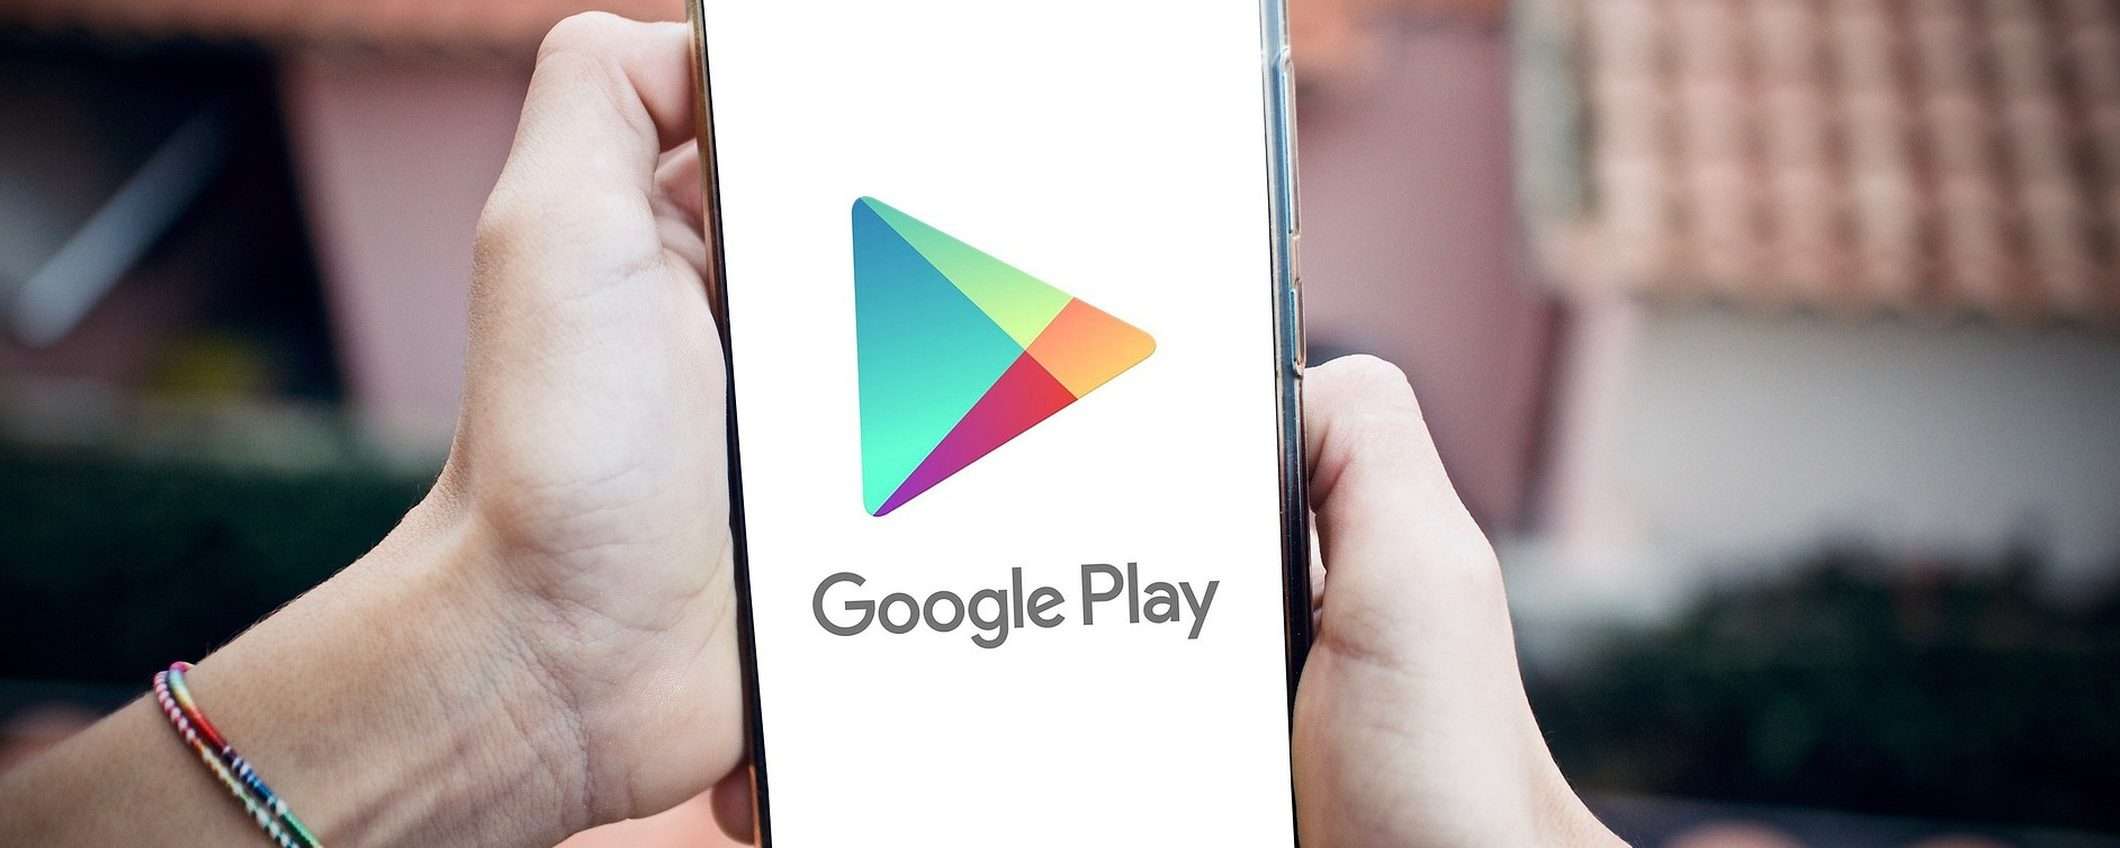 Scoperte 4 nuove app che diffondono malware su Google Play